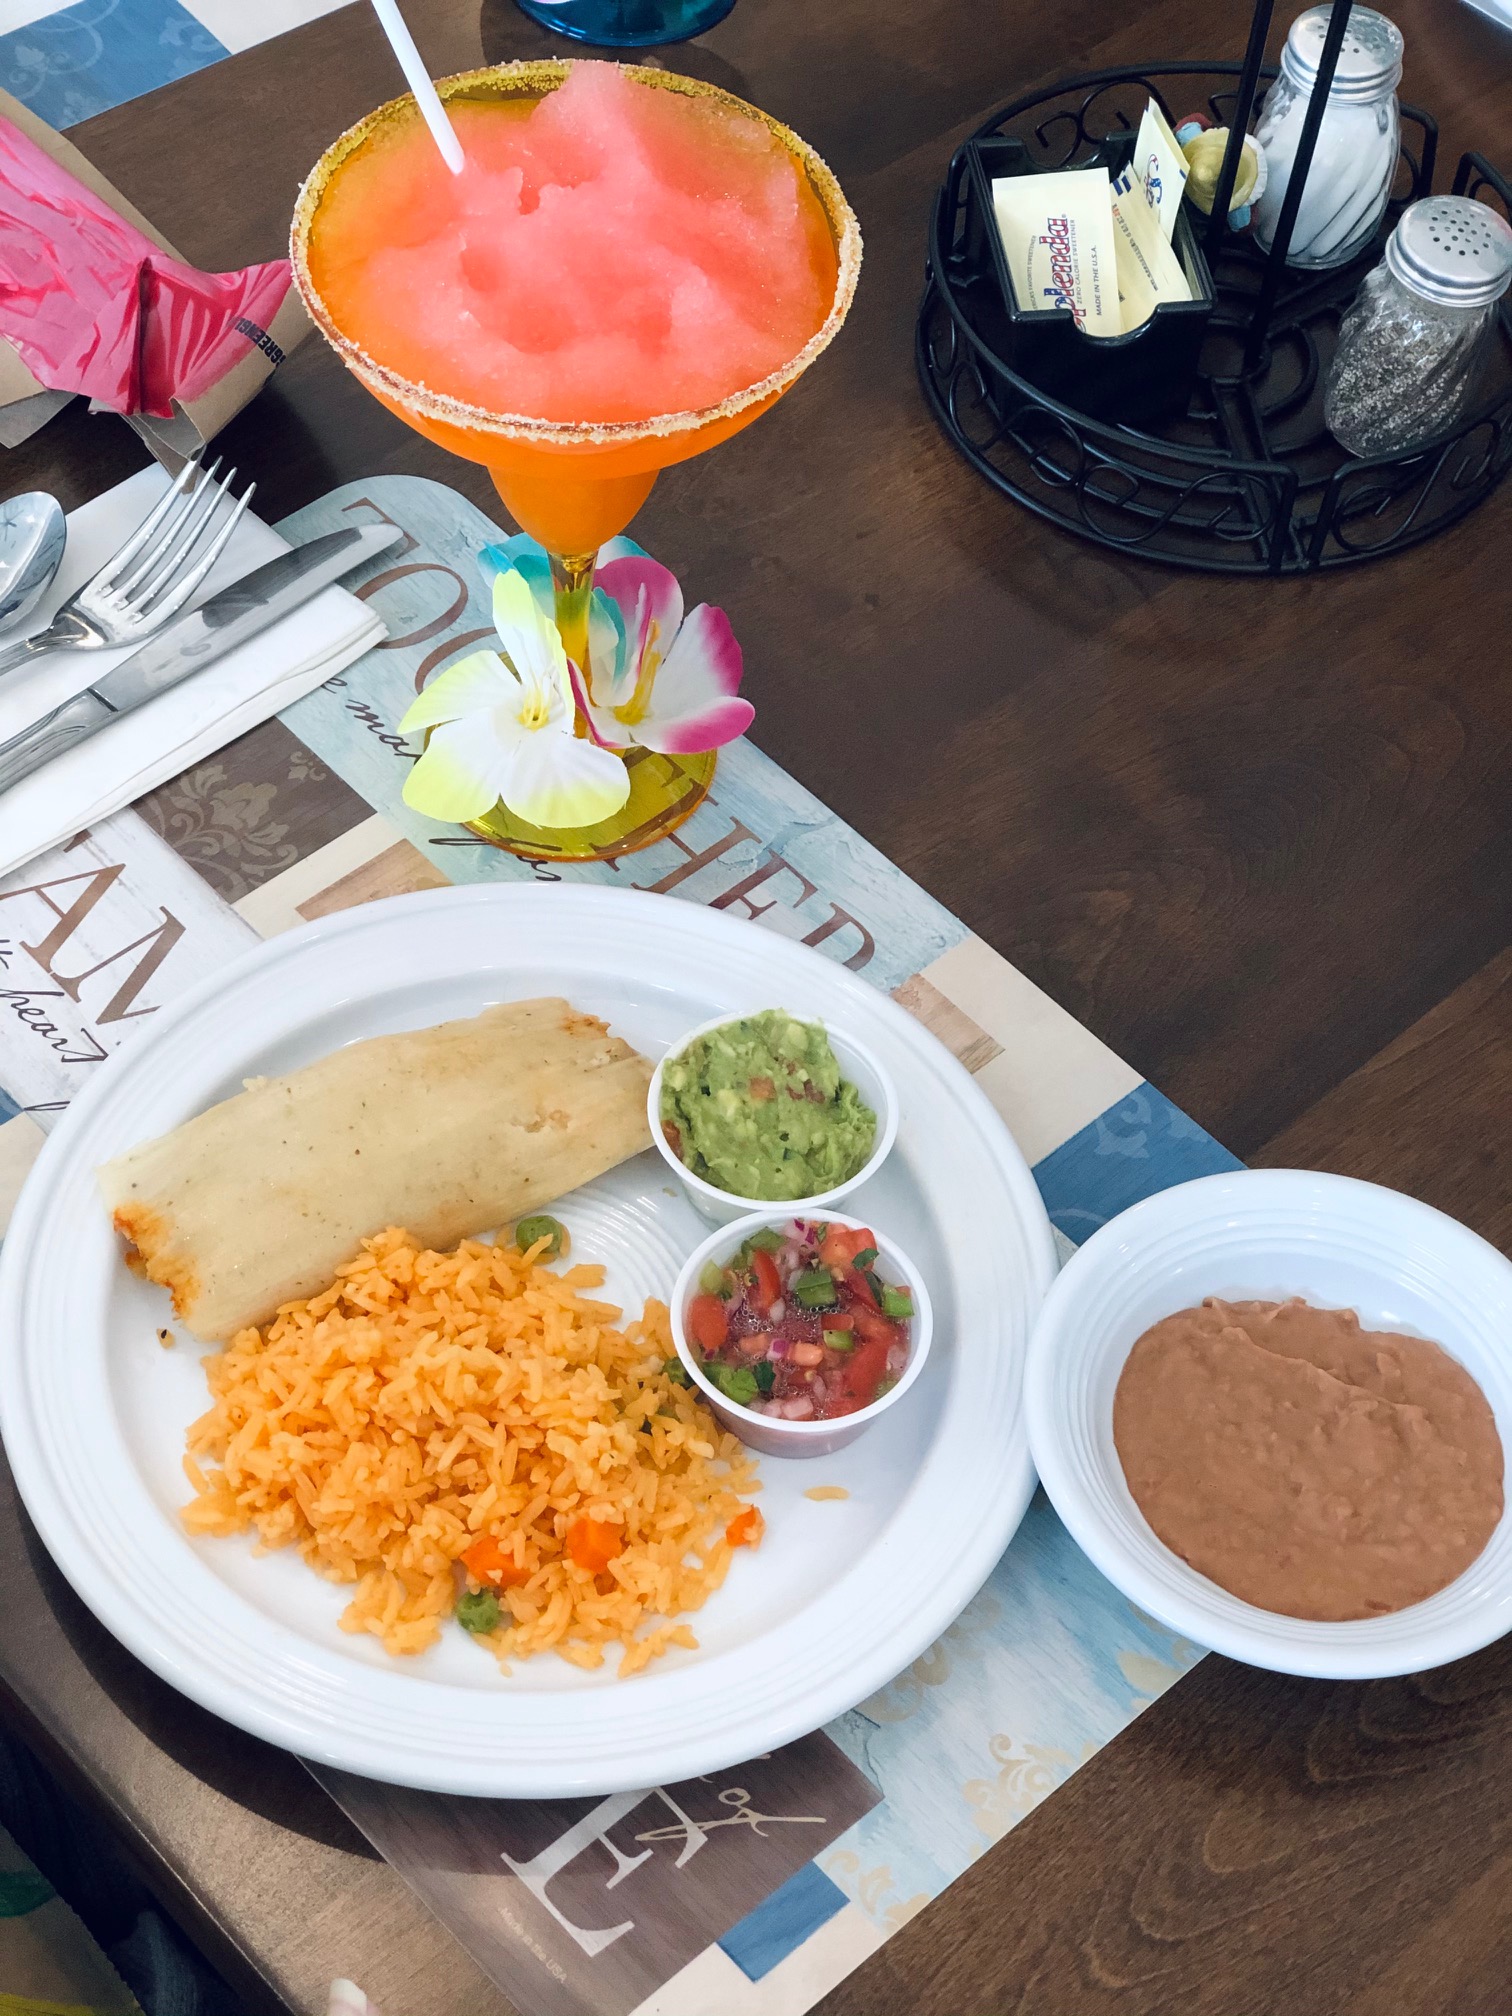 Tamales, Mexican Rice, Homemade Pico De Gallo, Fresh Guacamole, Refried Beans & a Virgin Margarita for Cinco De Mayo!